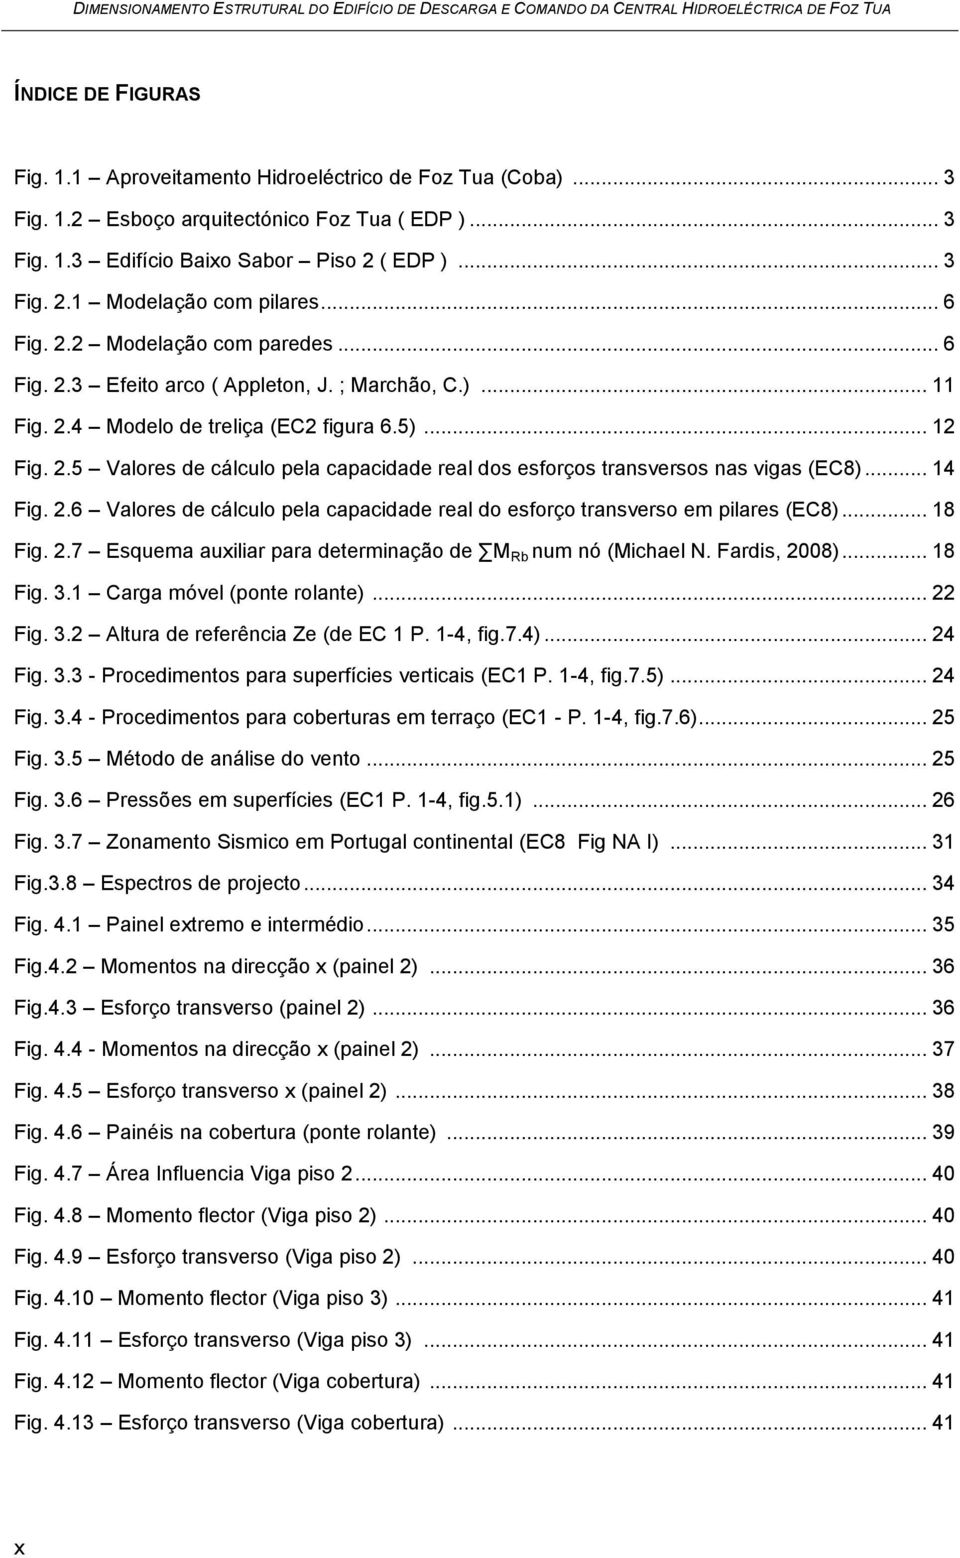 .. 14 Fig. 2.6 Valores de cálculo pela capacidade real do esforço transverso em pilares (EC8)... 18 Fig. 2.7 Esquema auxiliar para determinação de M Rb num nó (Michael N. Fardis, 2008)... 18 Fig. 3.